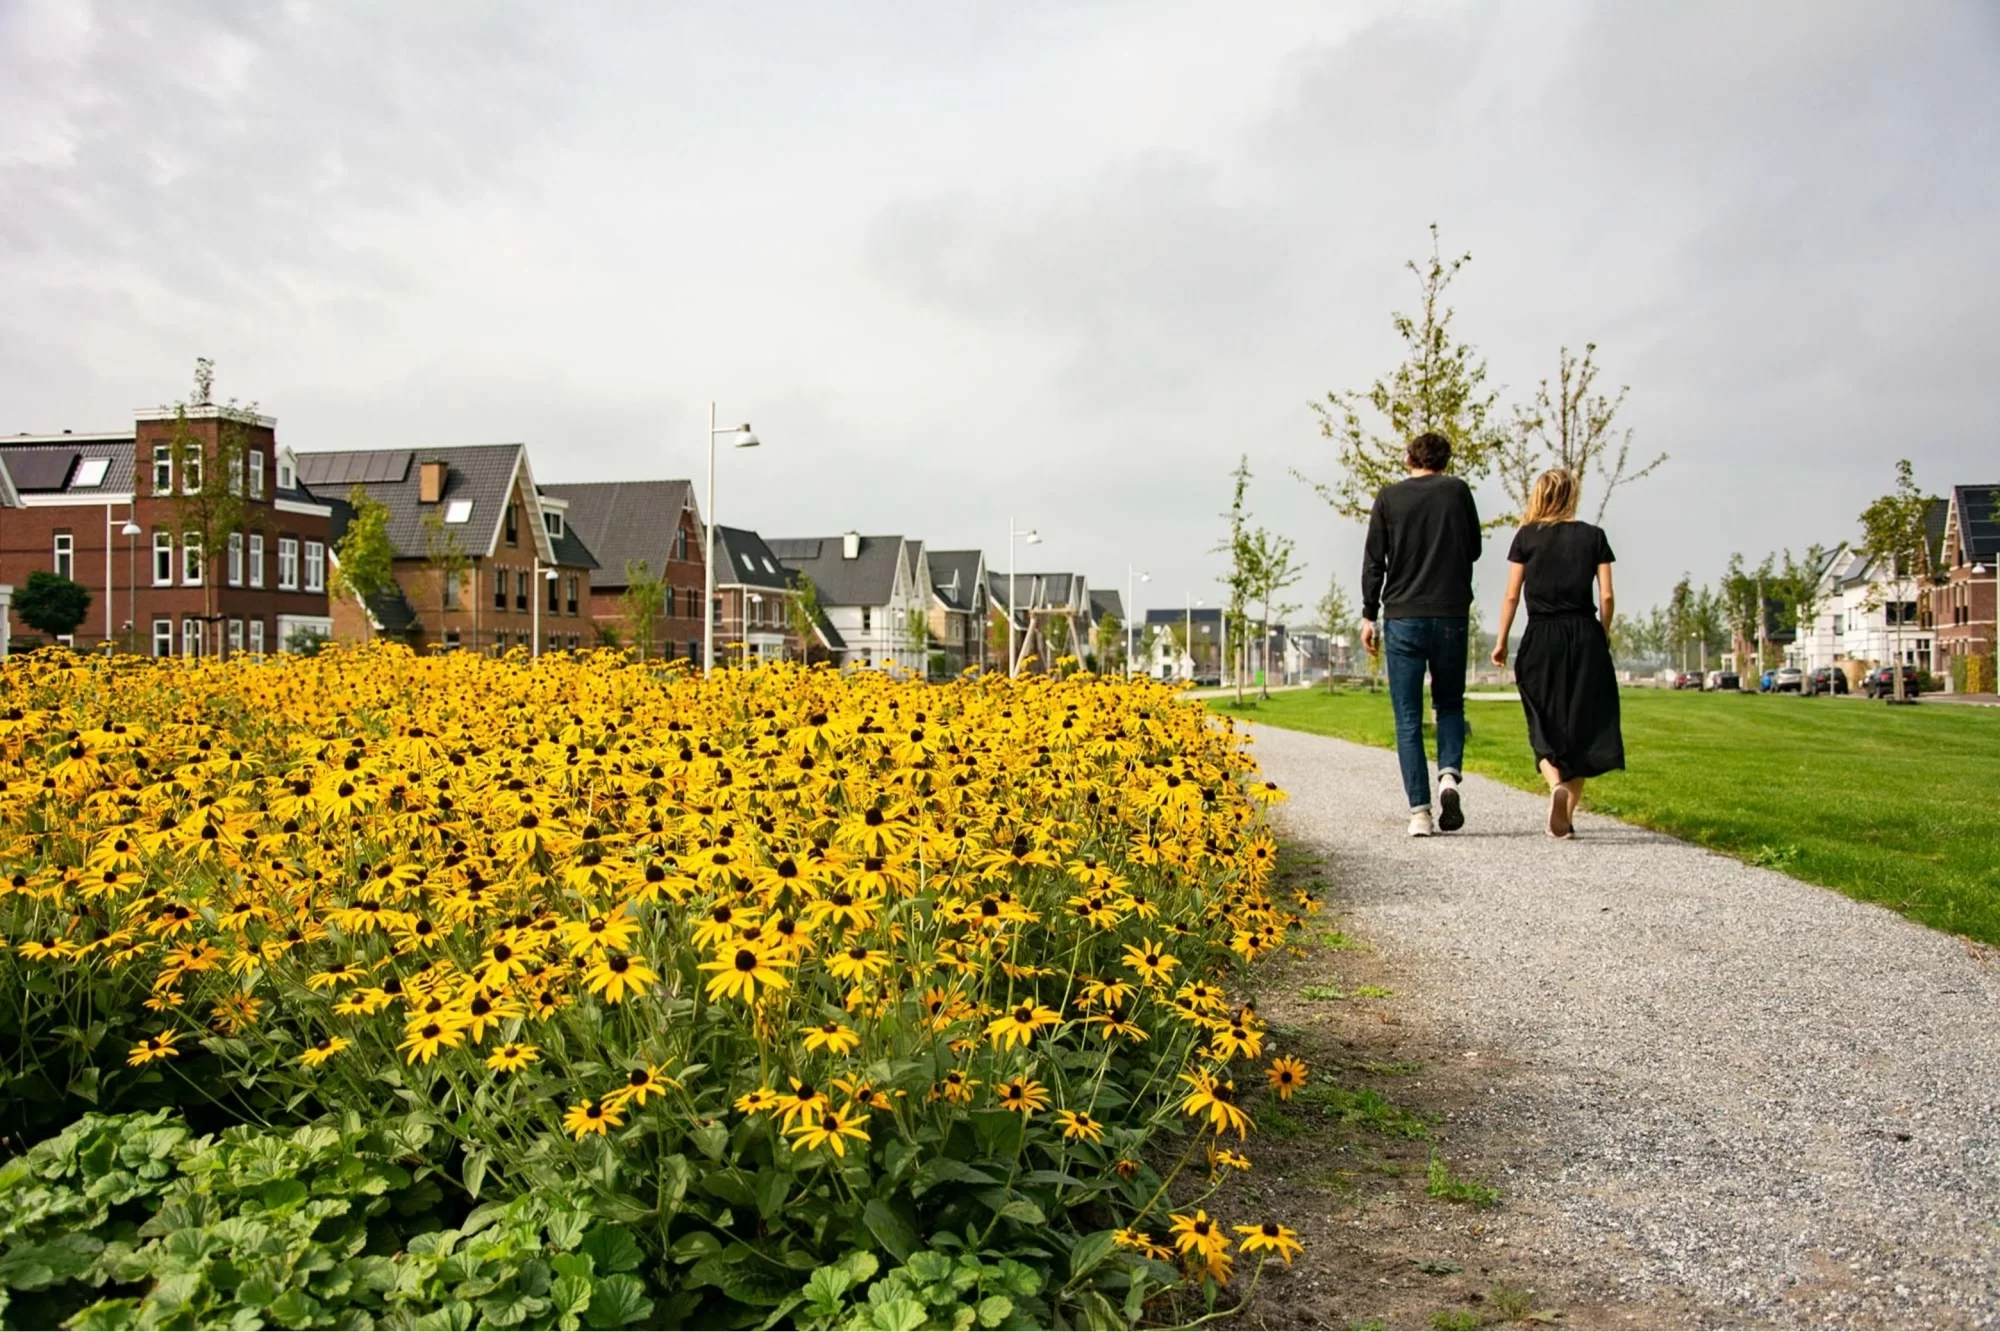 3x een nieuw park aanleggen in een nieuwbouwwijk in Weesp